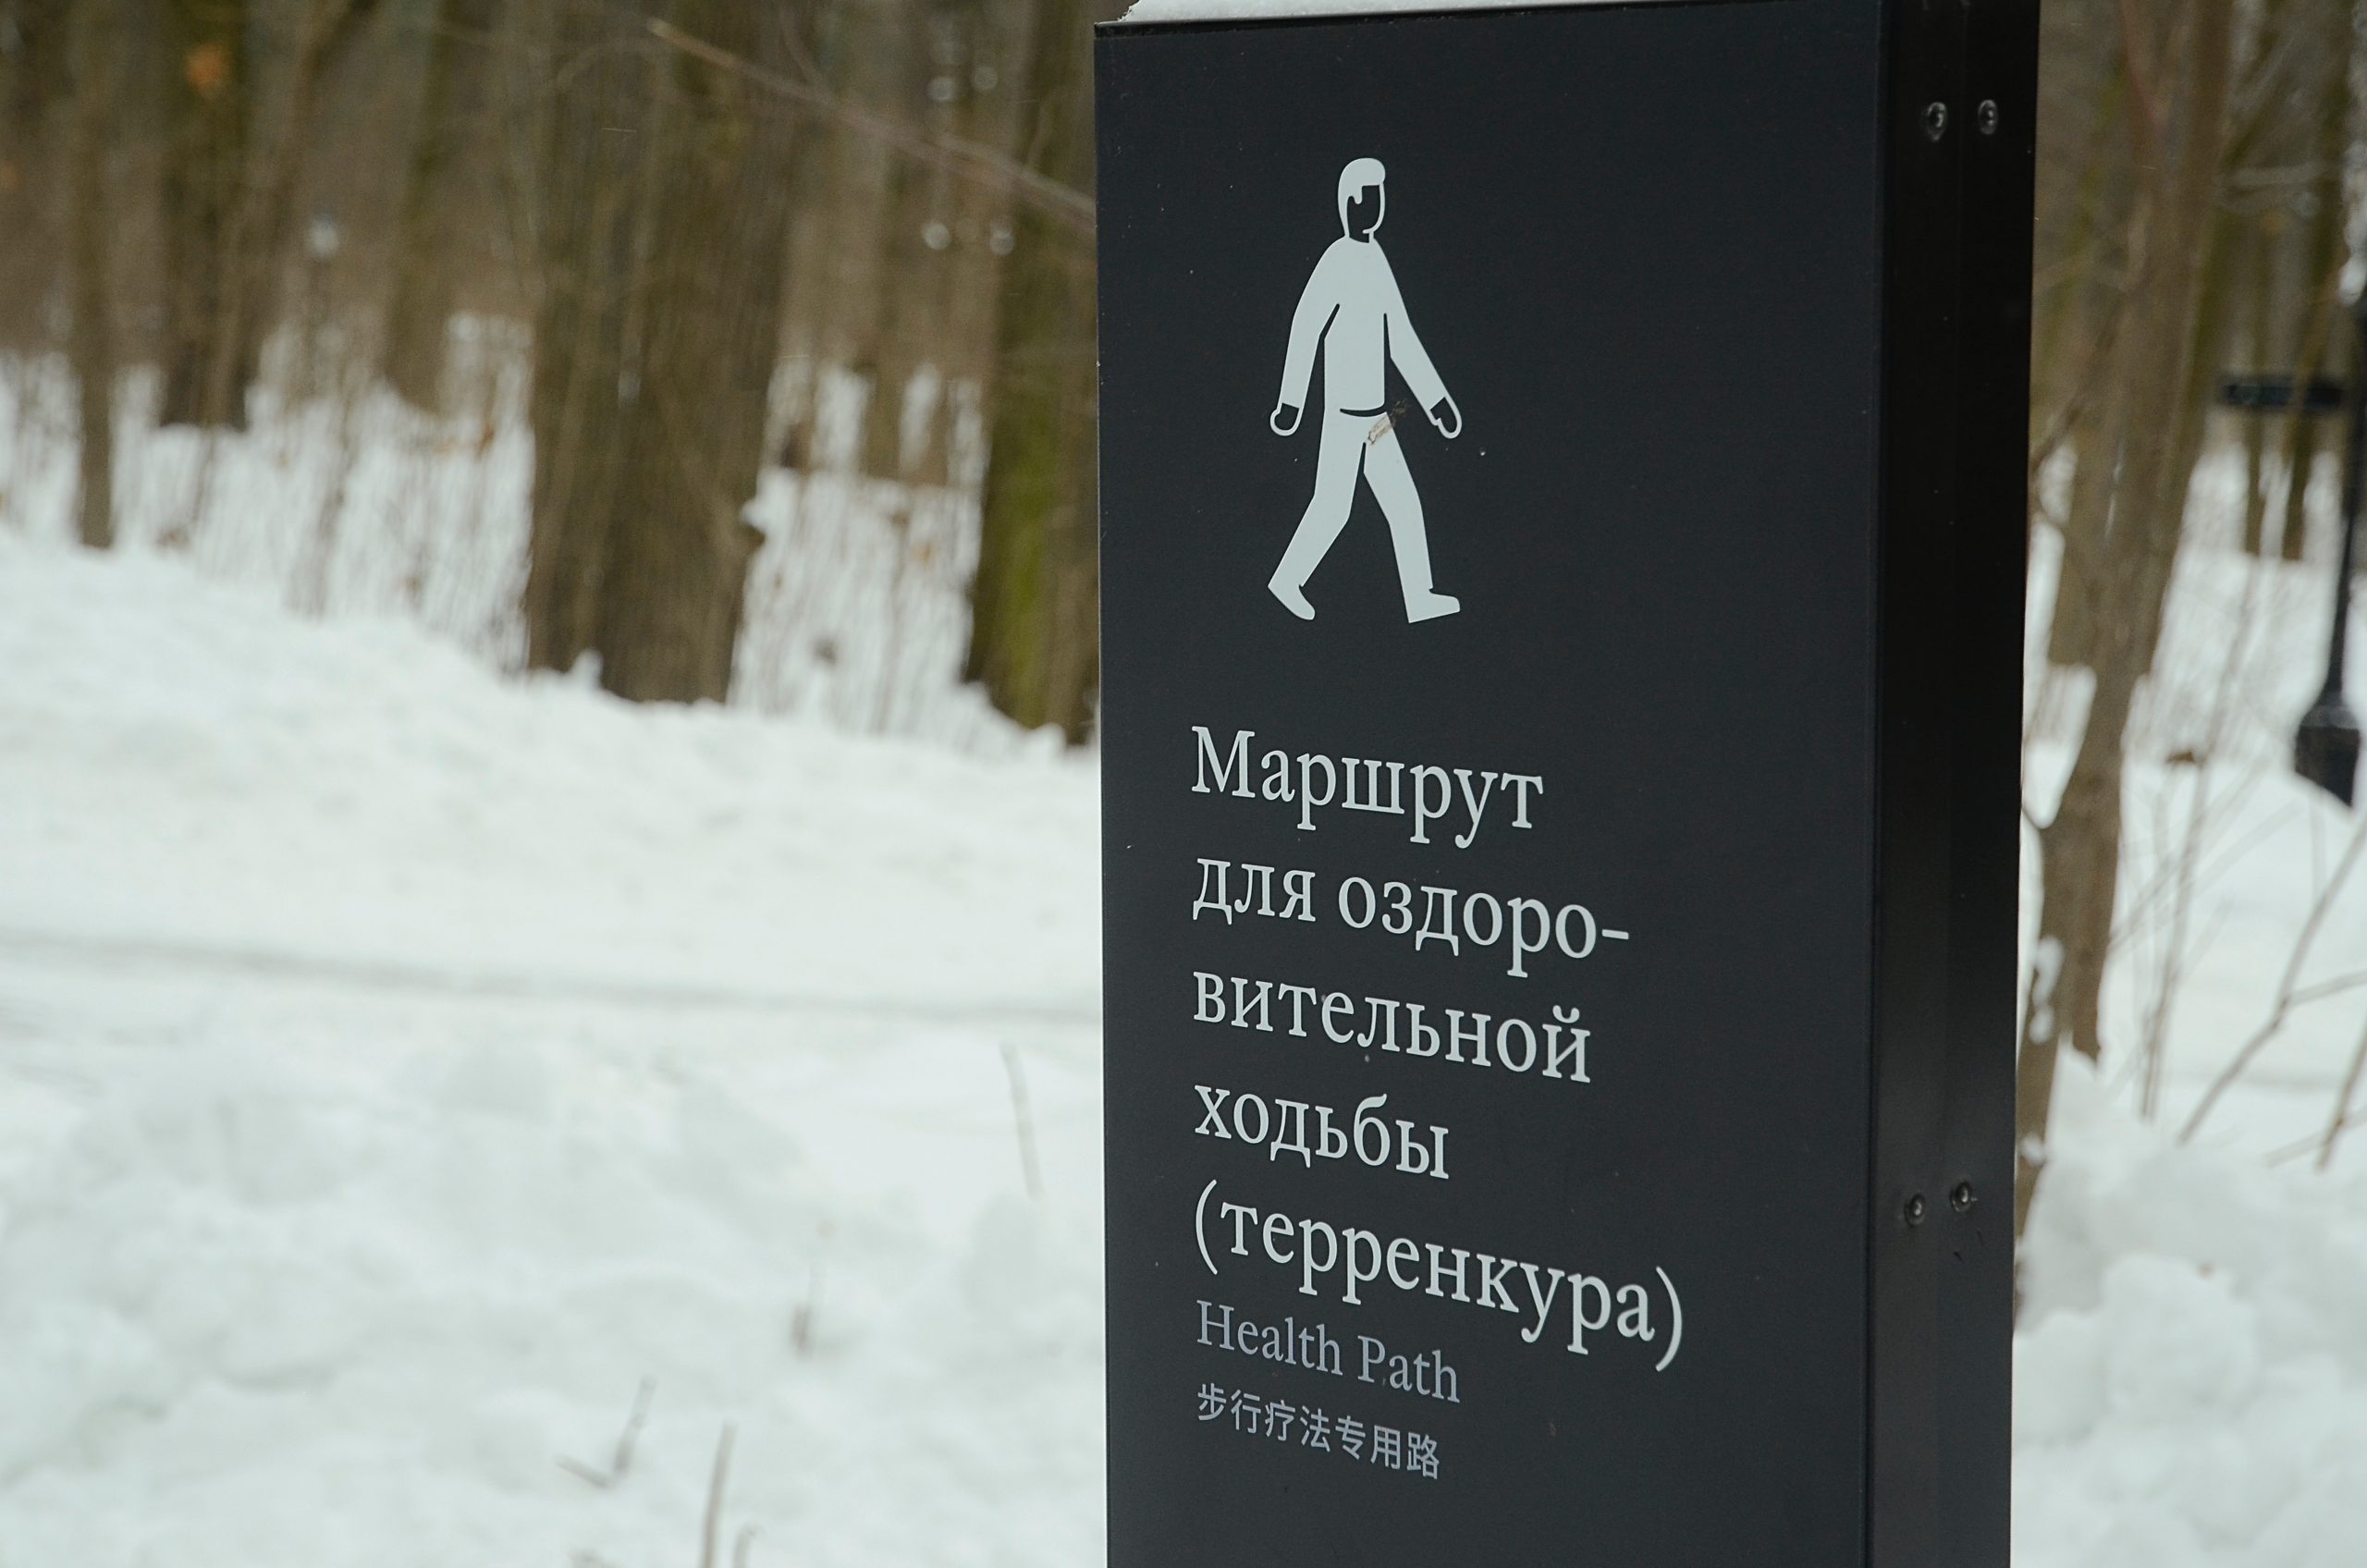 Жителям столицы предложили присоединиться к проекту «Московская ходьба»